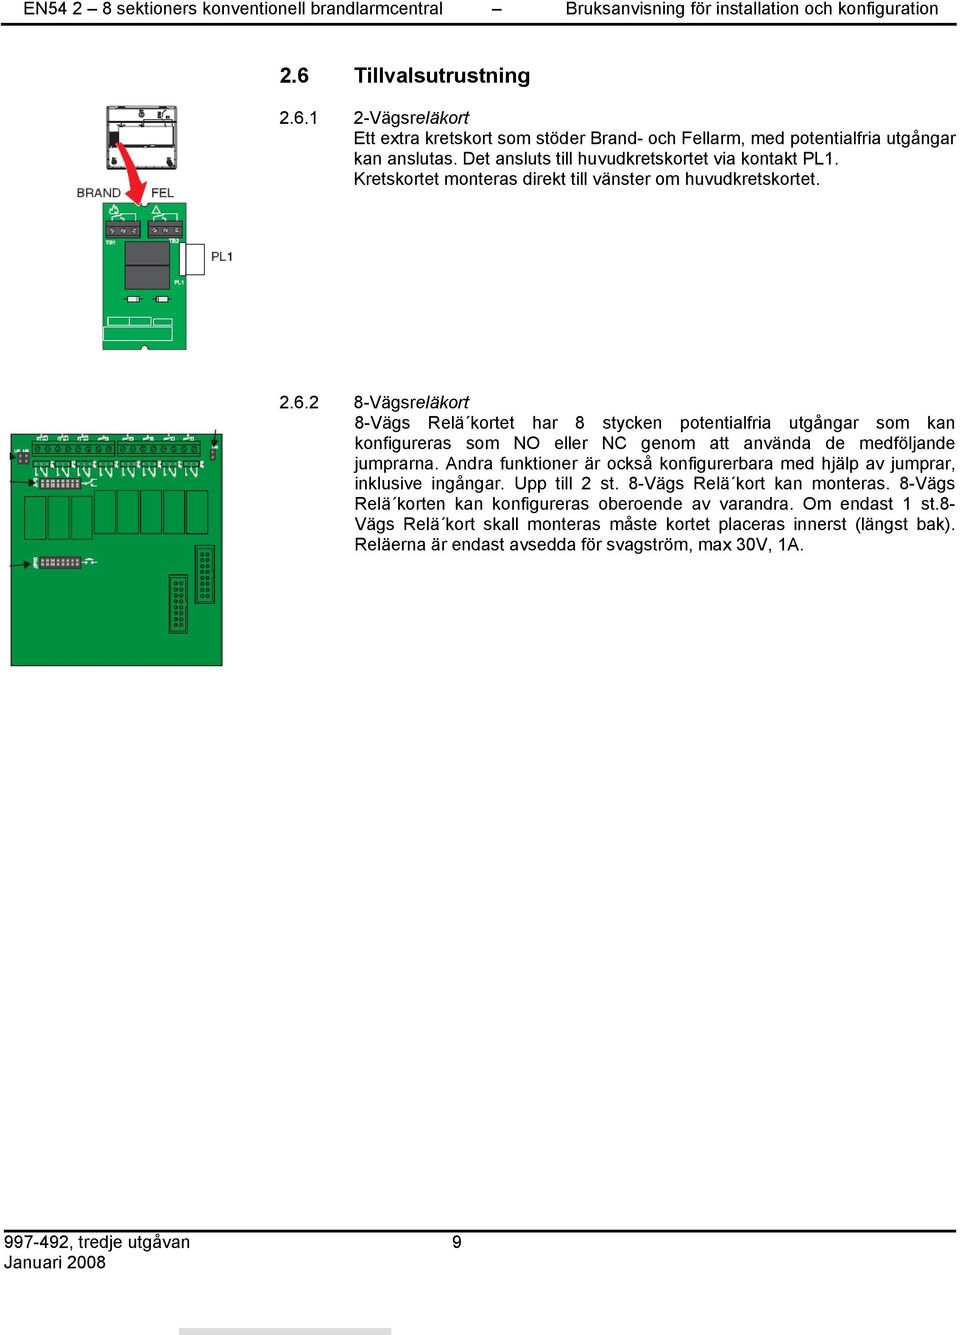 2 8-Vägsreläkort 8-Vägs Relä kortet har 8 stycken potentialfria utgångar som kan konfigureras som NO eller NC genom att använda de medföljande jumprarna.